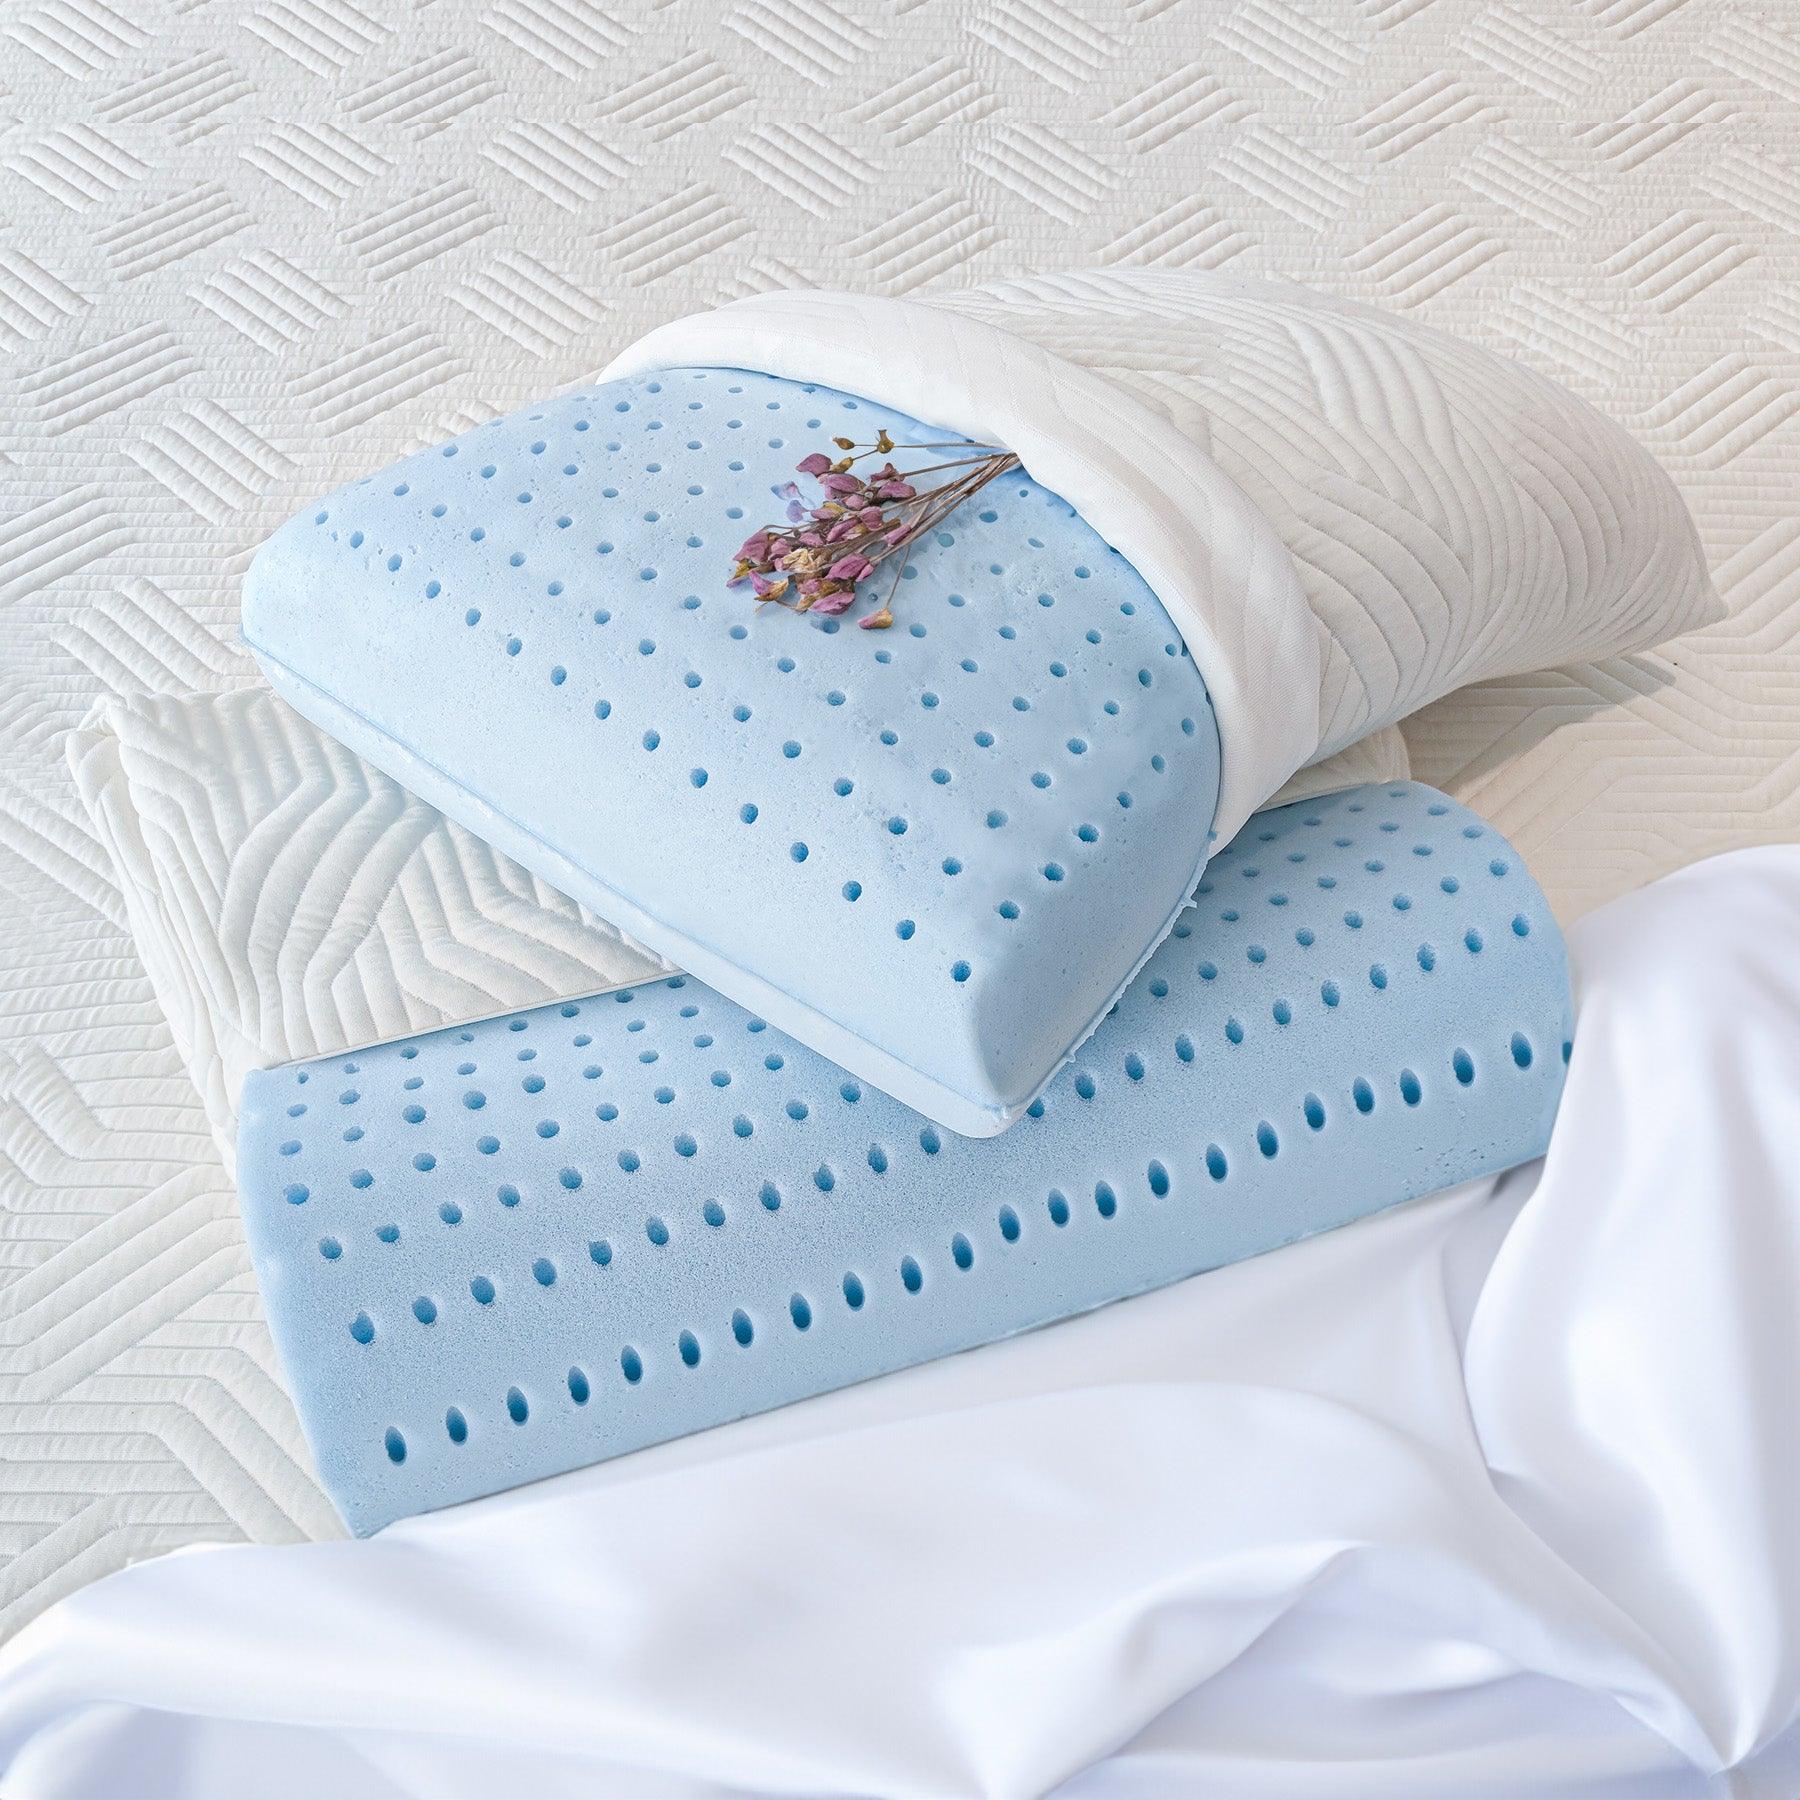 Cuscino cervicale Donizetti in 100% Watergel di Beliamo, progettato per offrire supporto ergonomico e comfort traspirante durante il sonno